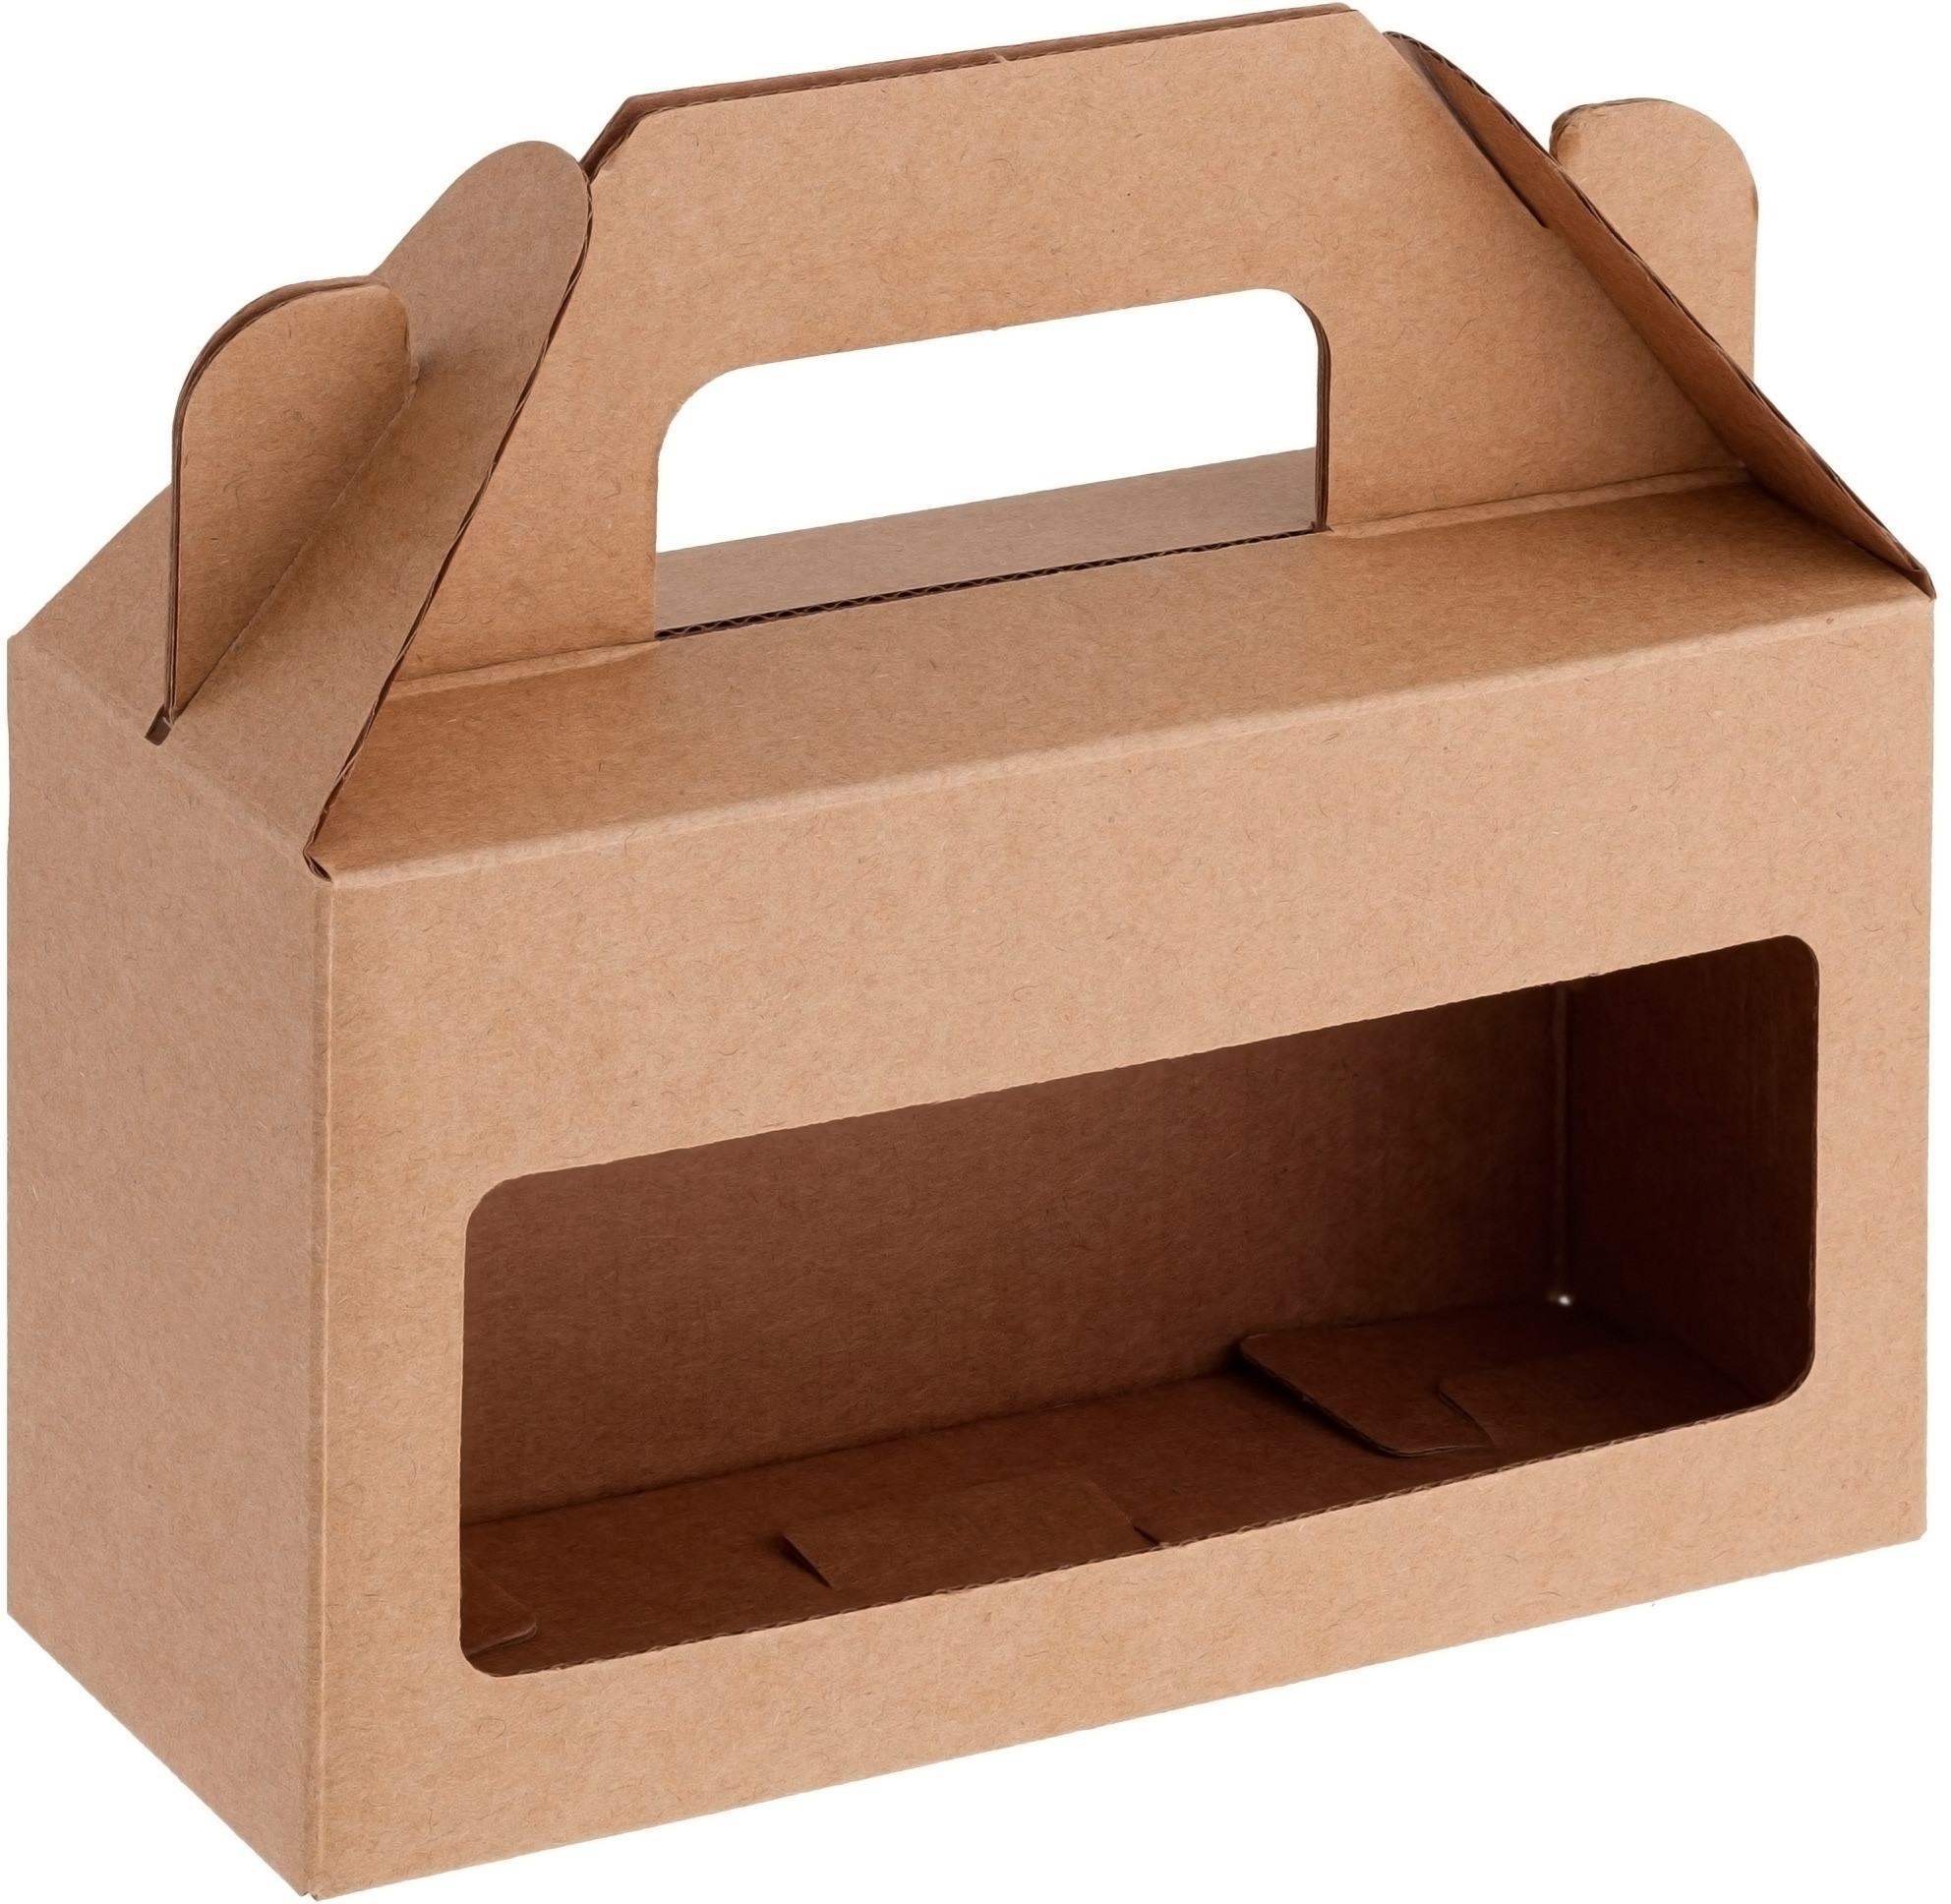 Картонный пакет коробка. Коробка самосборная крафт. Коробка самосборная с окном крафт. Коробка самосборная крафт 150х300х60. Ручка для картонной коробки.